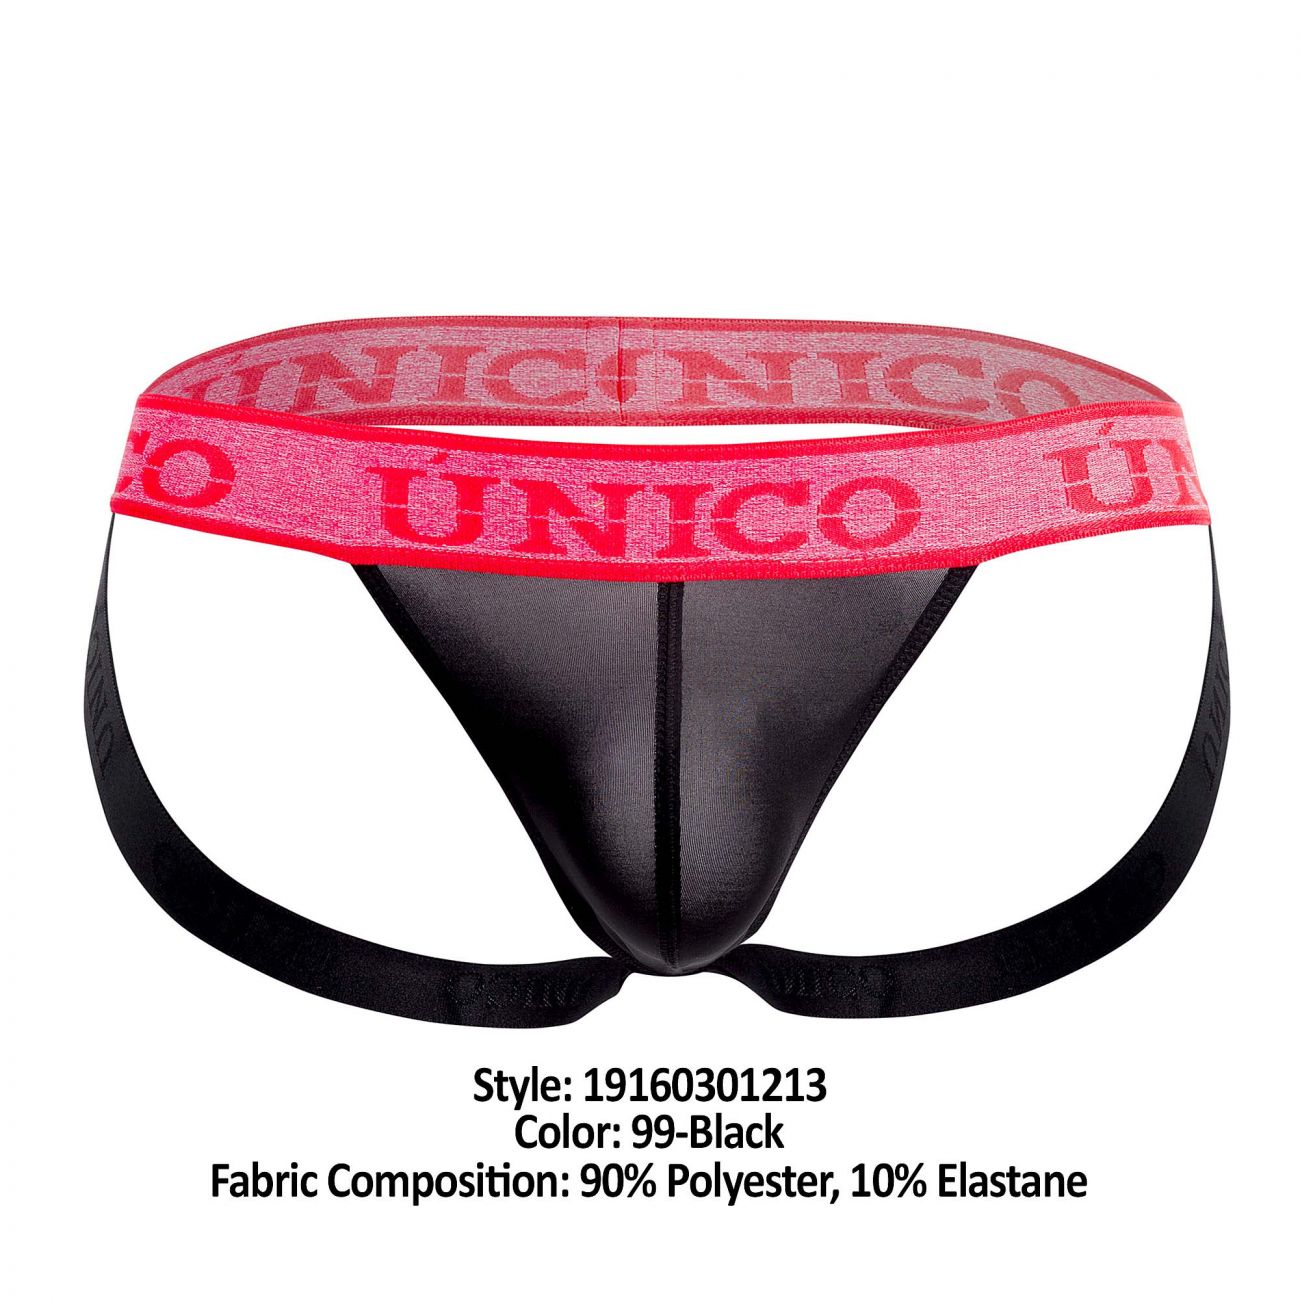 Unico 19160301213 COLORS Poderoso Jockstrap Color 99-Black